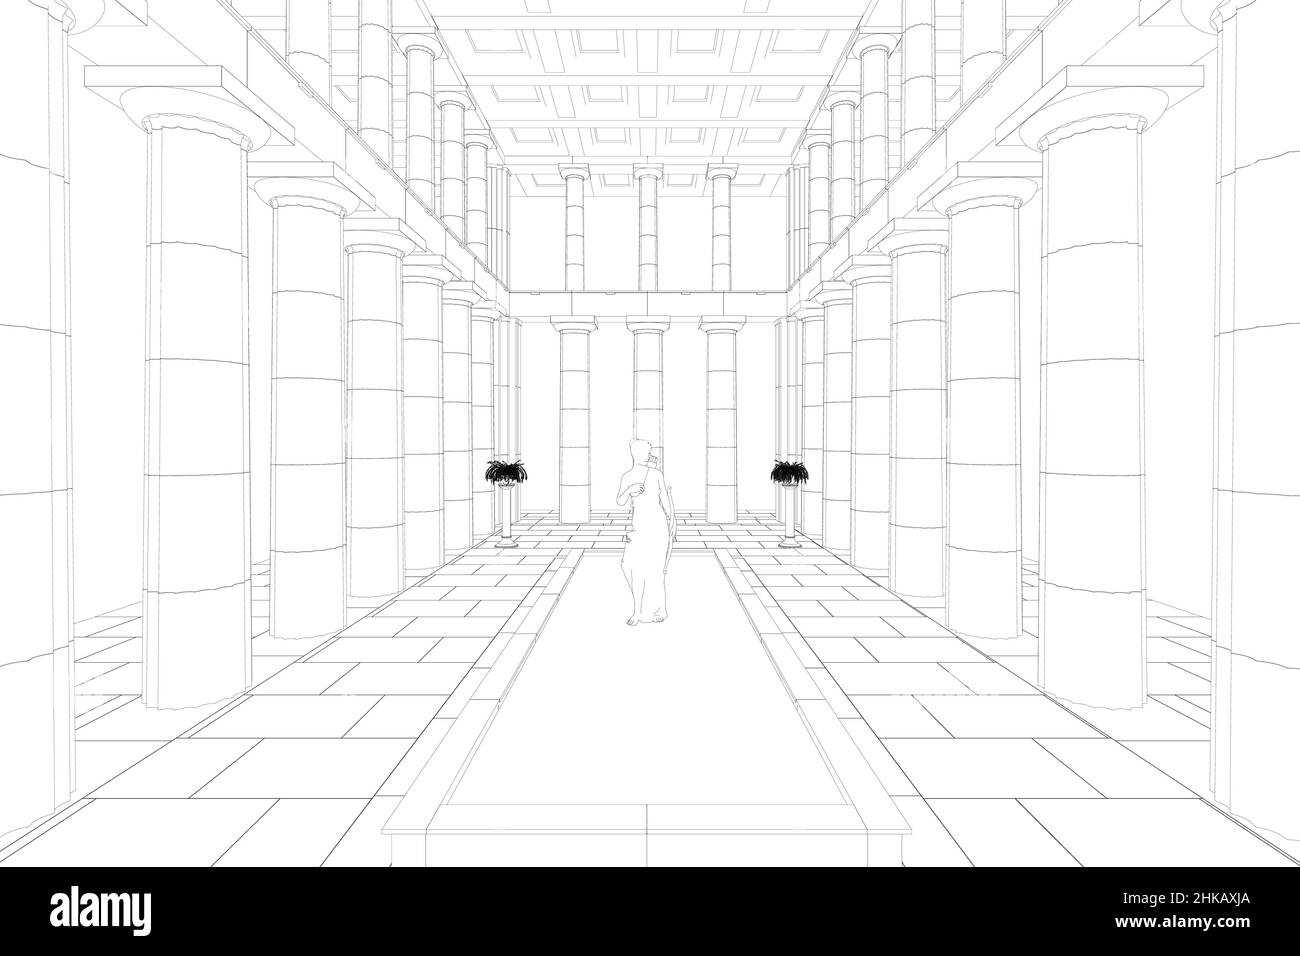 Contour de la salle avec des colonnes architecturales et une sculpture d'une femme à partir de lignes noires isolées sur fond blanc.Illustration vectorielle. Illustration de Vecteur